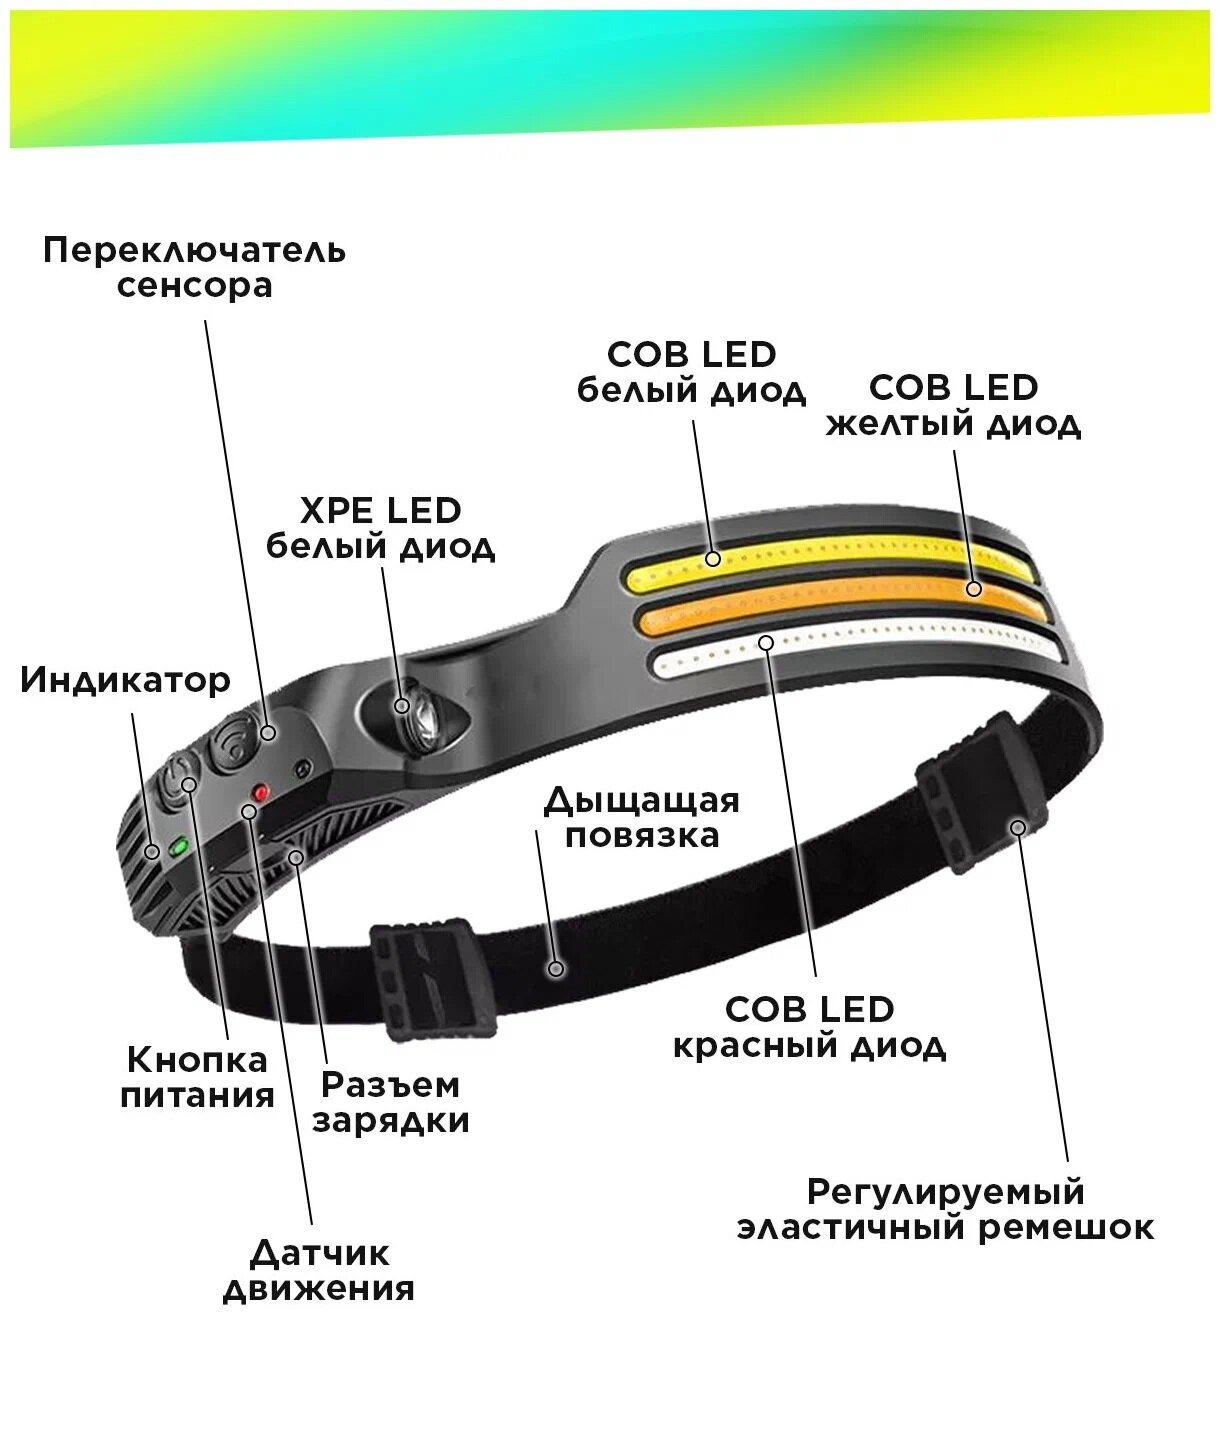 Налобный фонарь OPTIFORODGI OPFW689-3 Multi-Function induction headlamp с сенсорным датчиком включения. Цвет черный